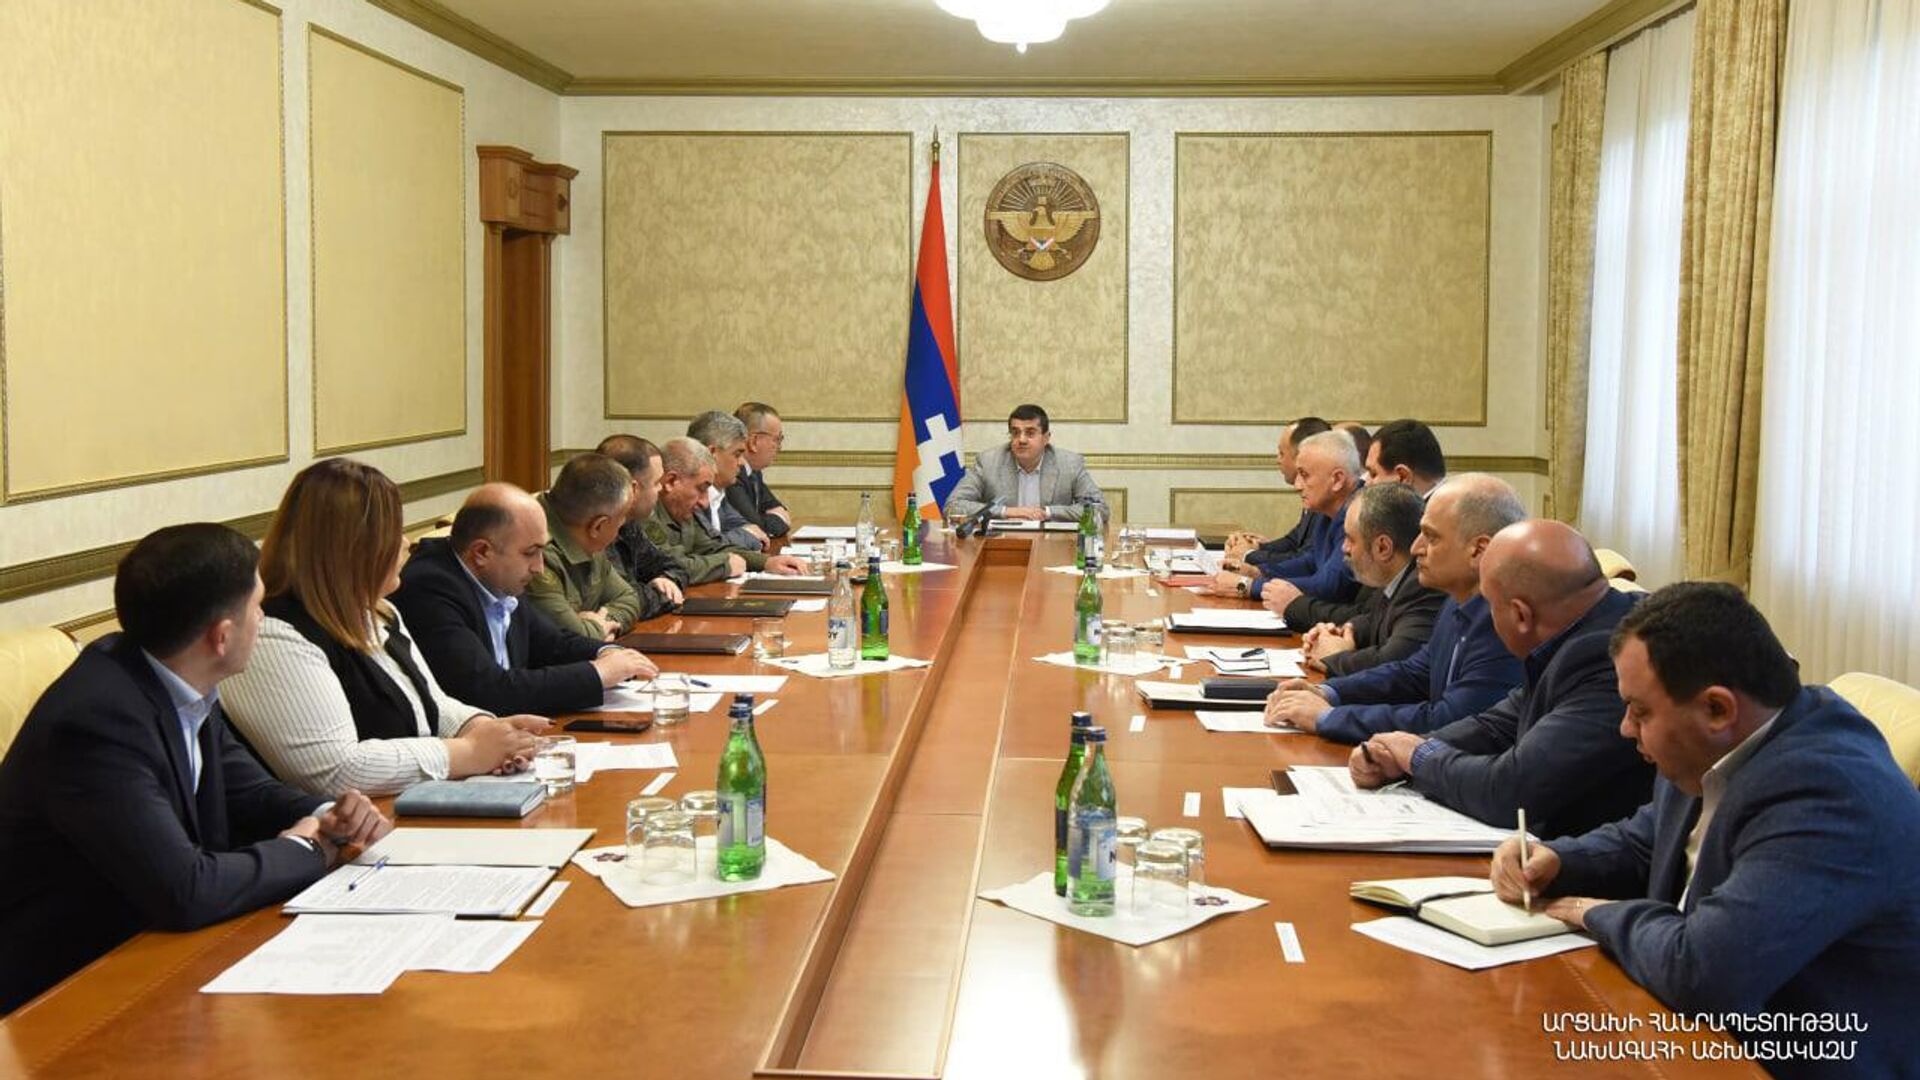 Глава Нагорного Карабаха потребовал ужесточить меры внутреннего порядка в НКР после громких инцидентов 